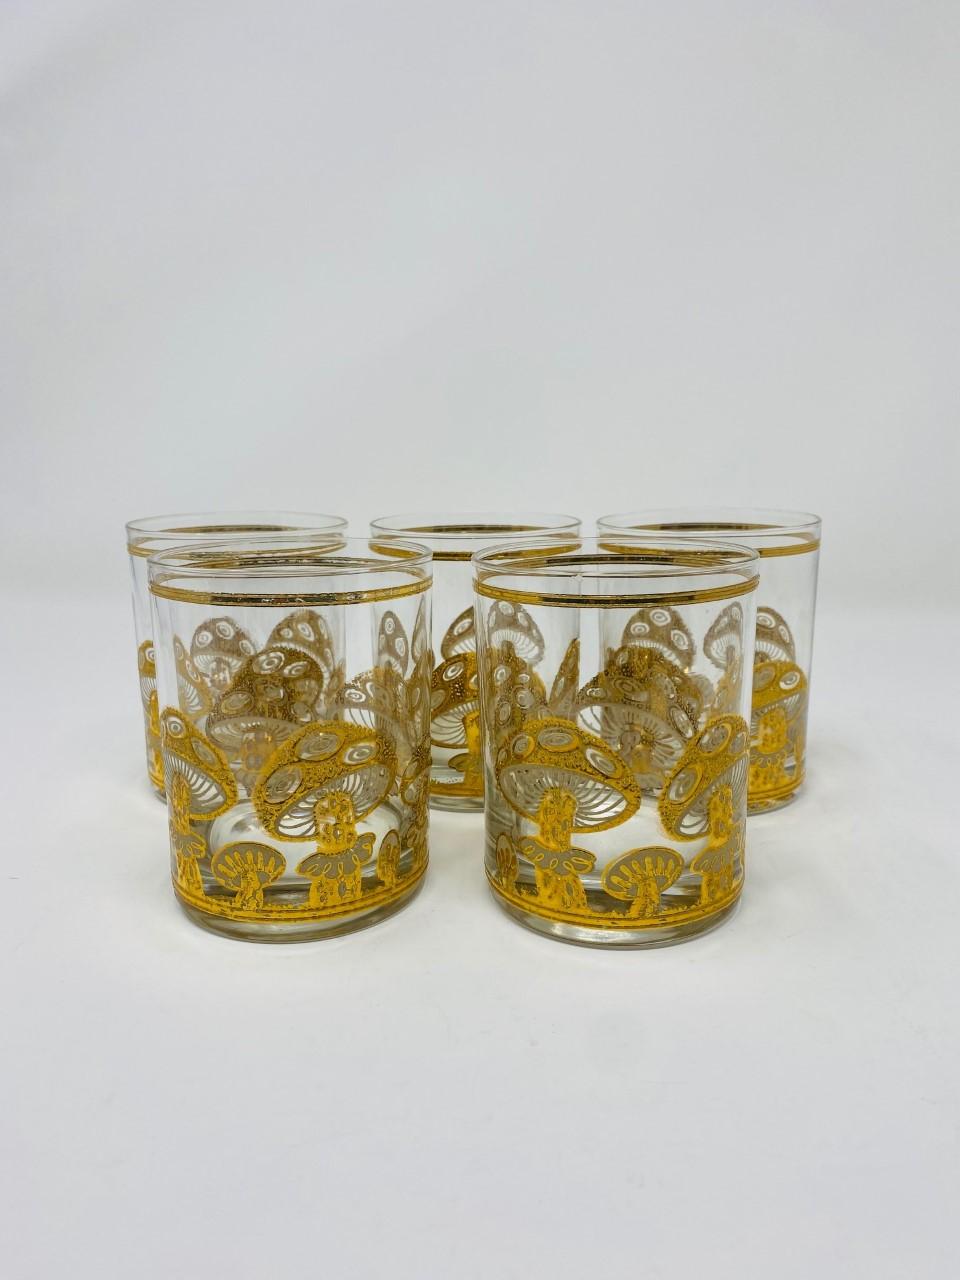 Magnifique ensemble de verres des années 1960 dans un motif de champignon magique par Culver, Ltd. Les motifs sur le verre sont en or 22k et sont dans un état impeccable. Ce magnifique ensemble de 5 verres est iconique, glamour et lumineux. Le